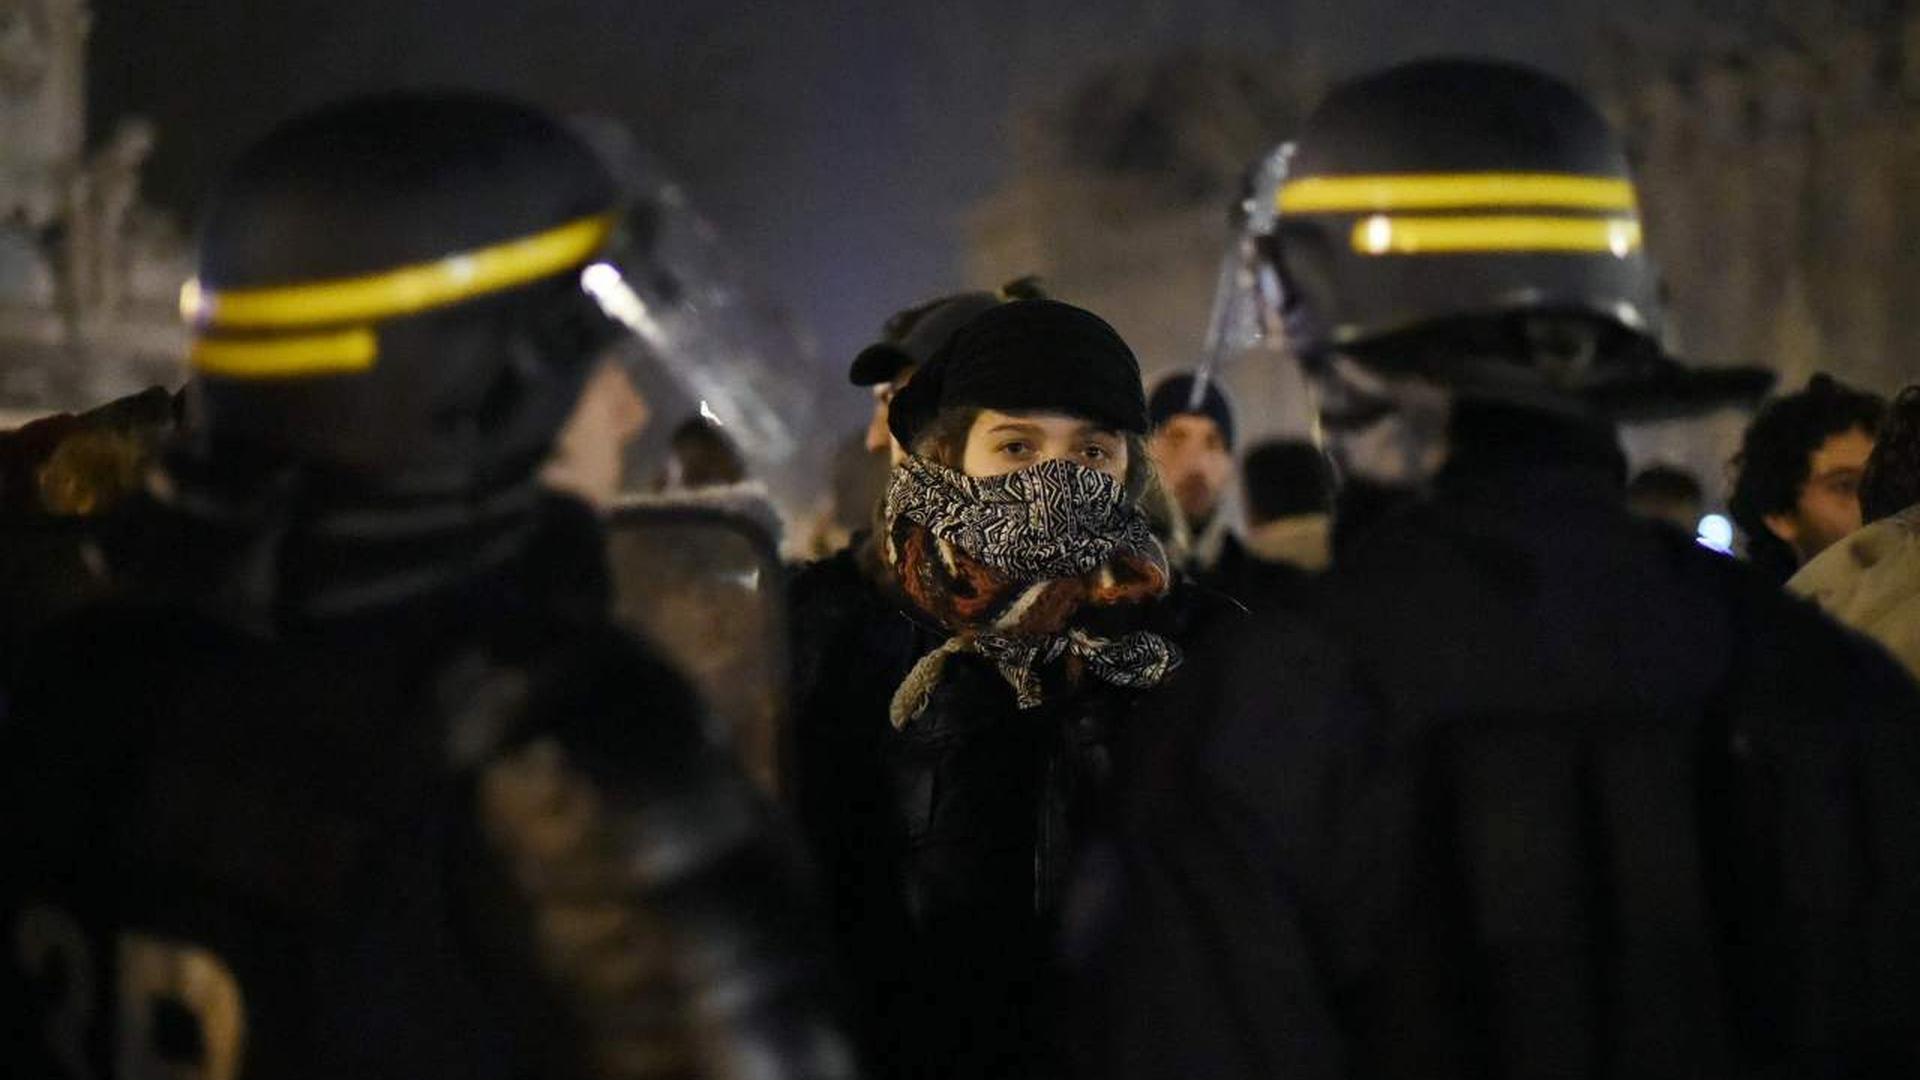 Les militants de la "Nuit debout" face à la police anti-émeutes.